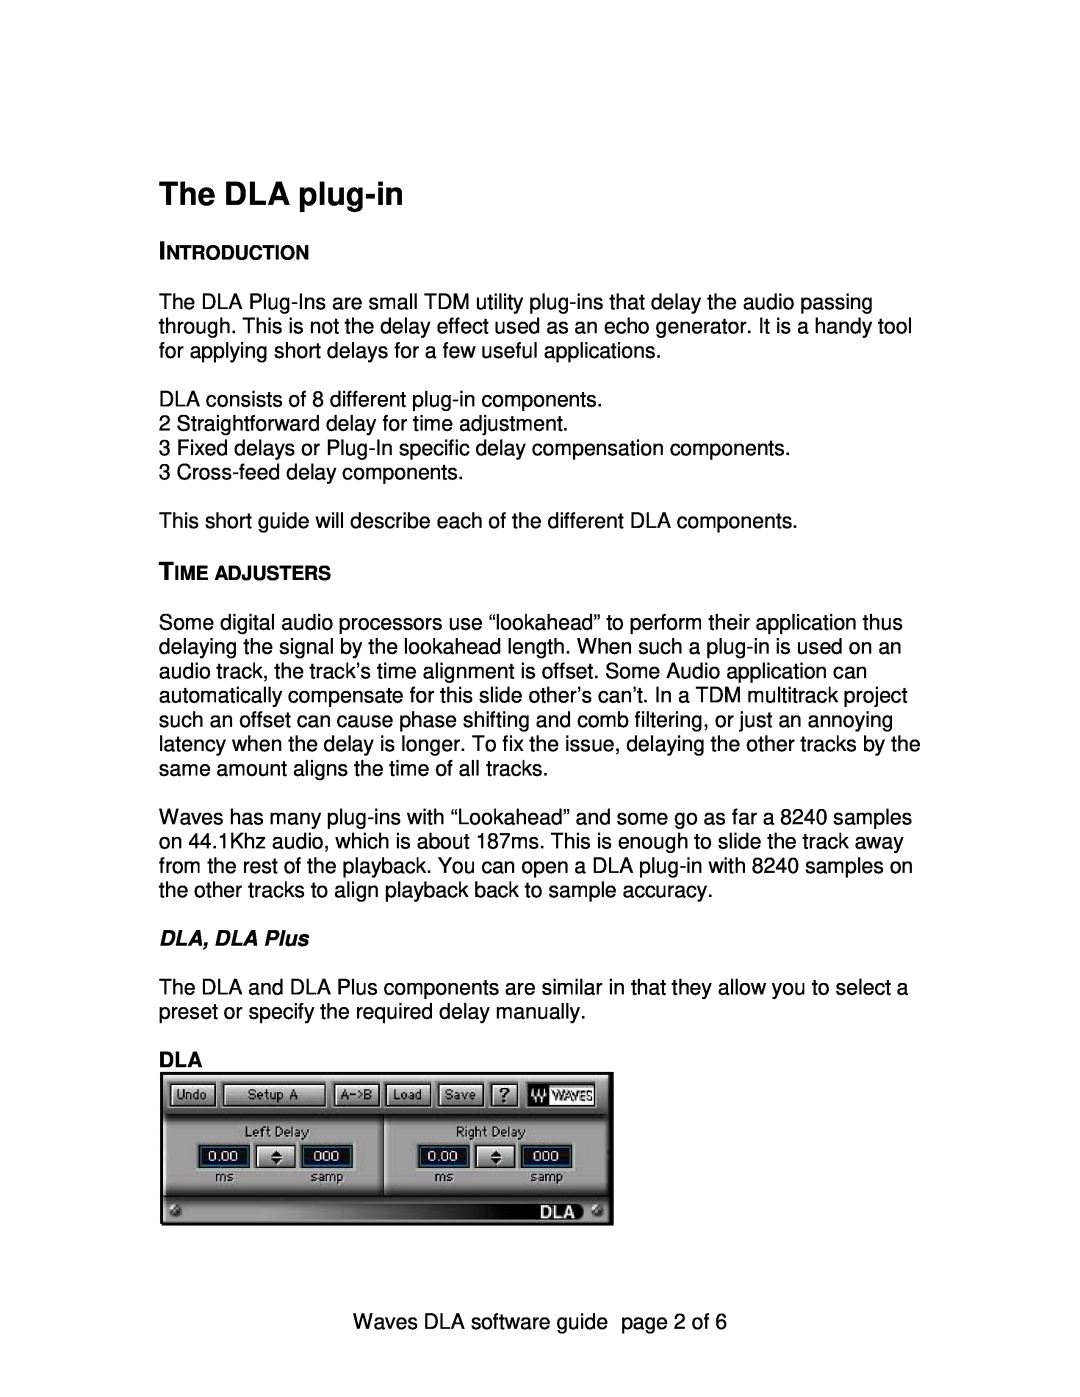 Waves manual DLA, DLA Plus, The DLA plug-in 